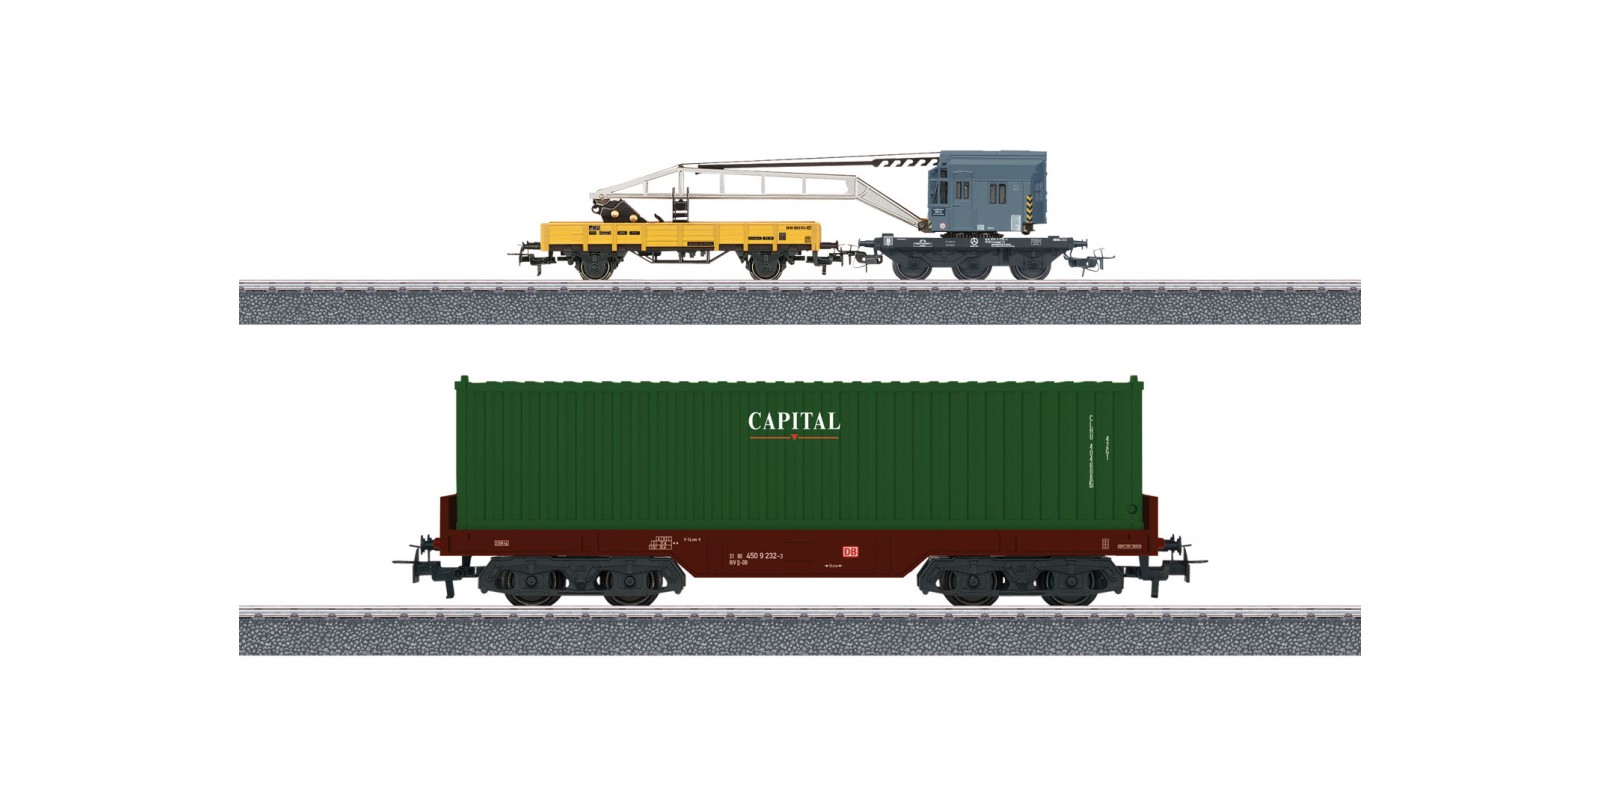 44452 Märklin Start up - "Container Loading" Car Set